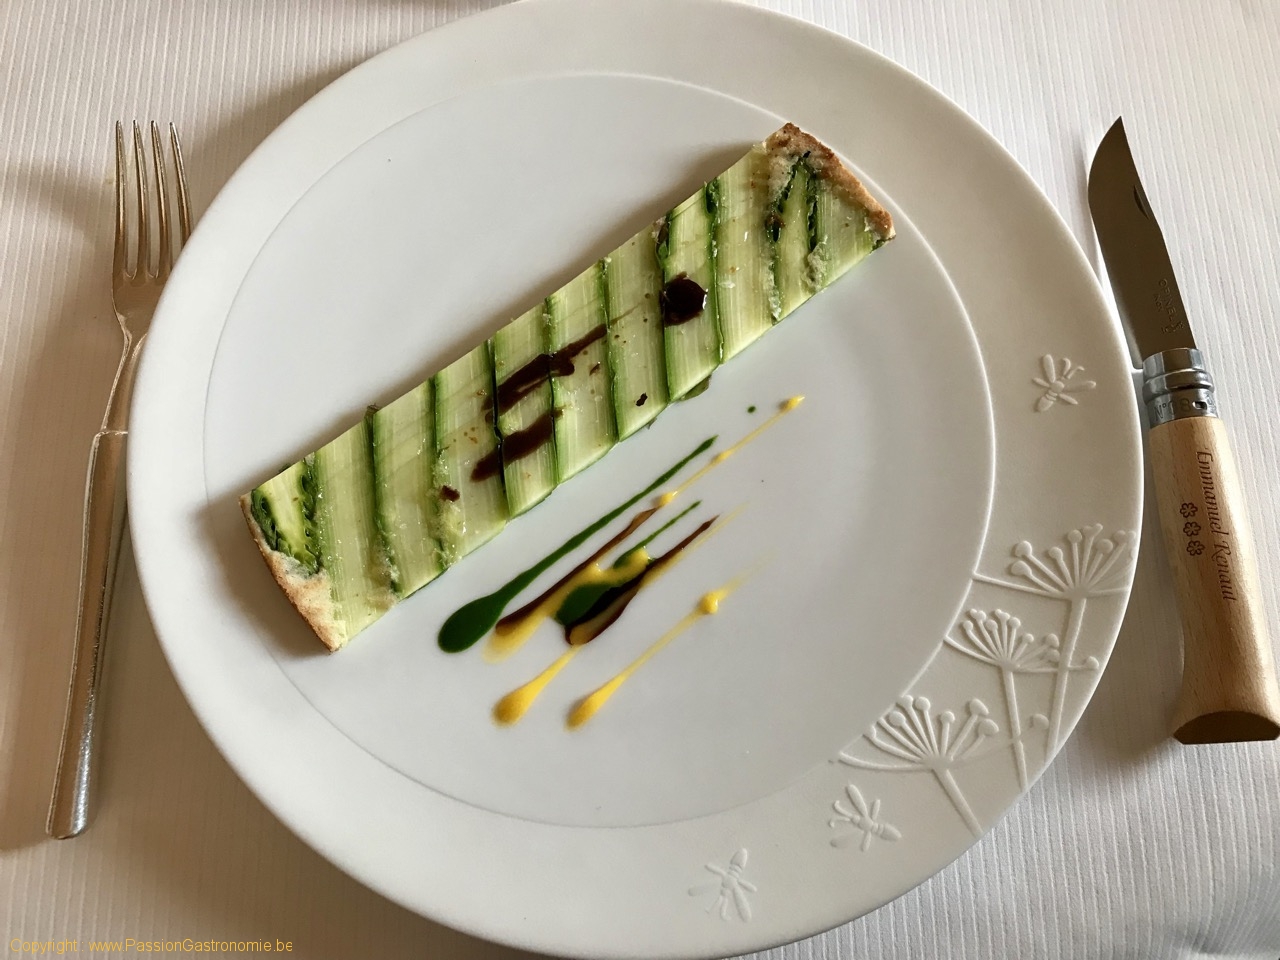 Restaurant Flocon de Sel - Premières asperges vertes